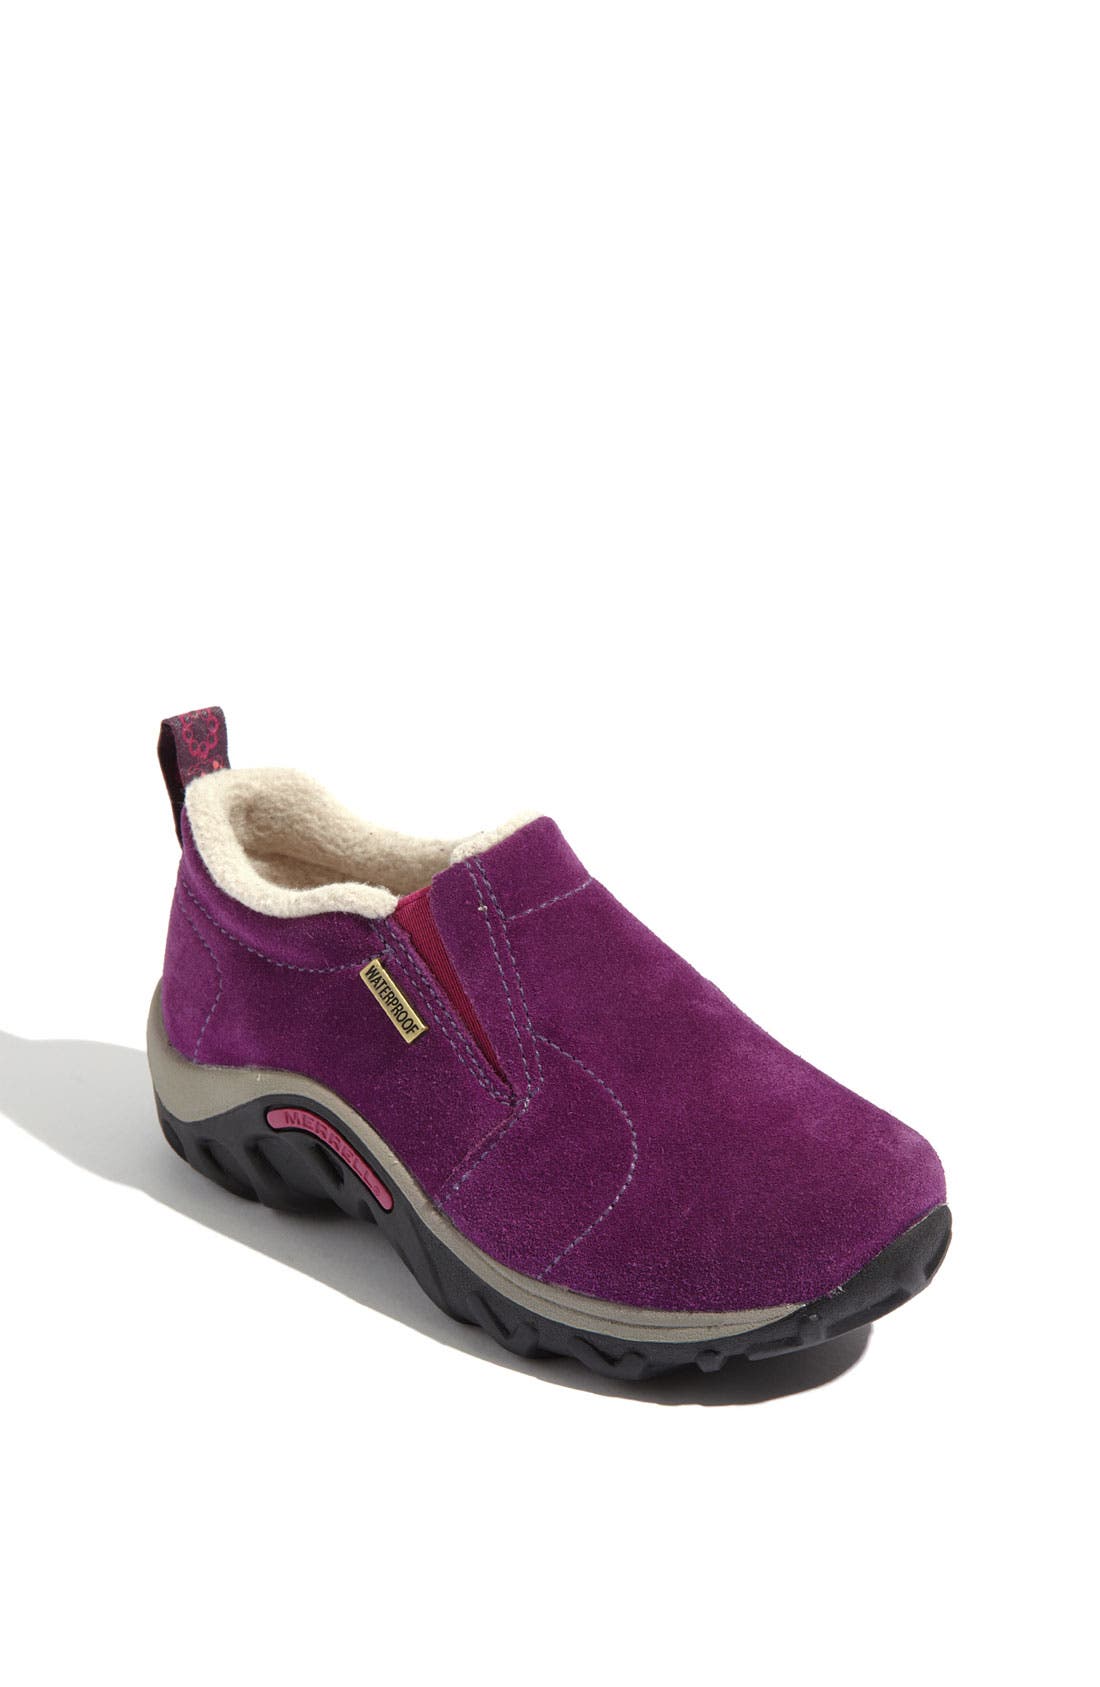 merrell shoes for girls